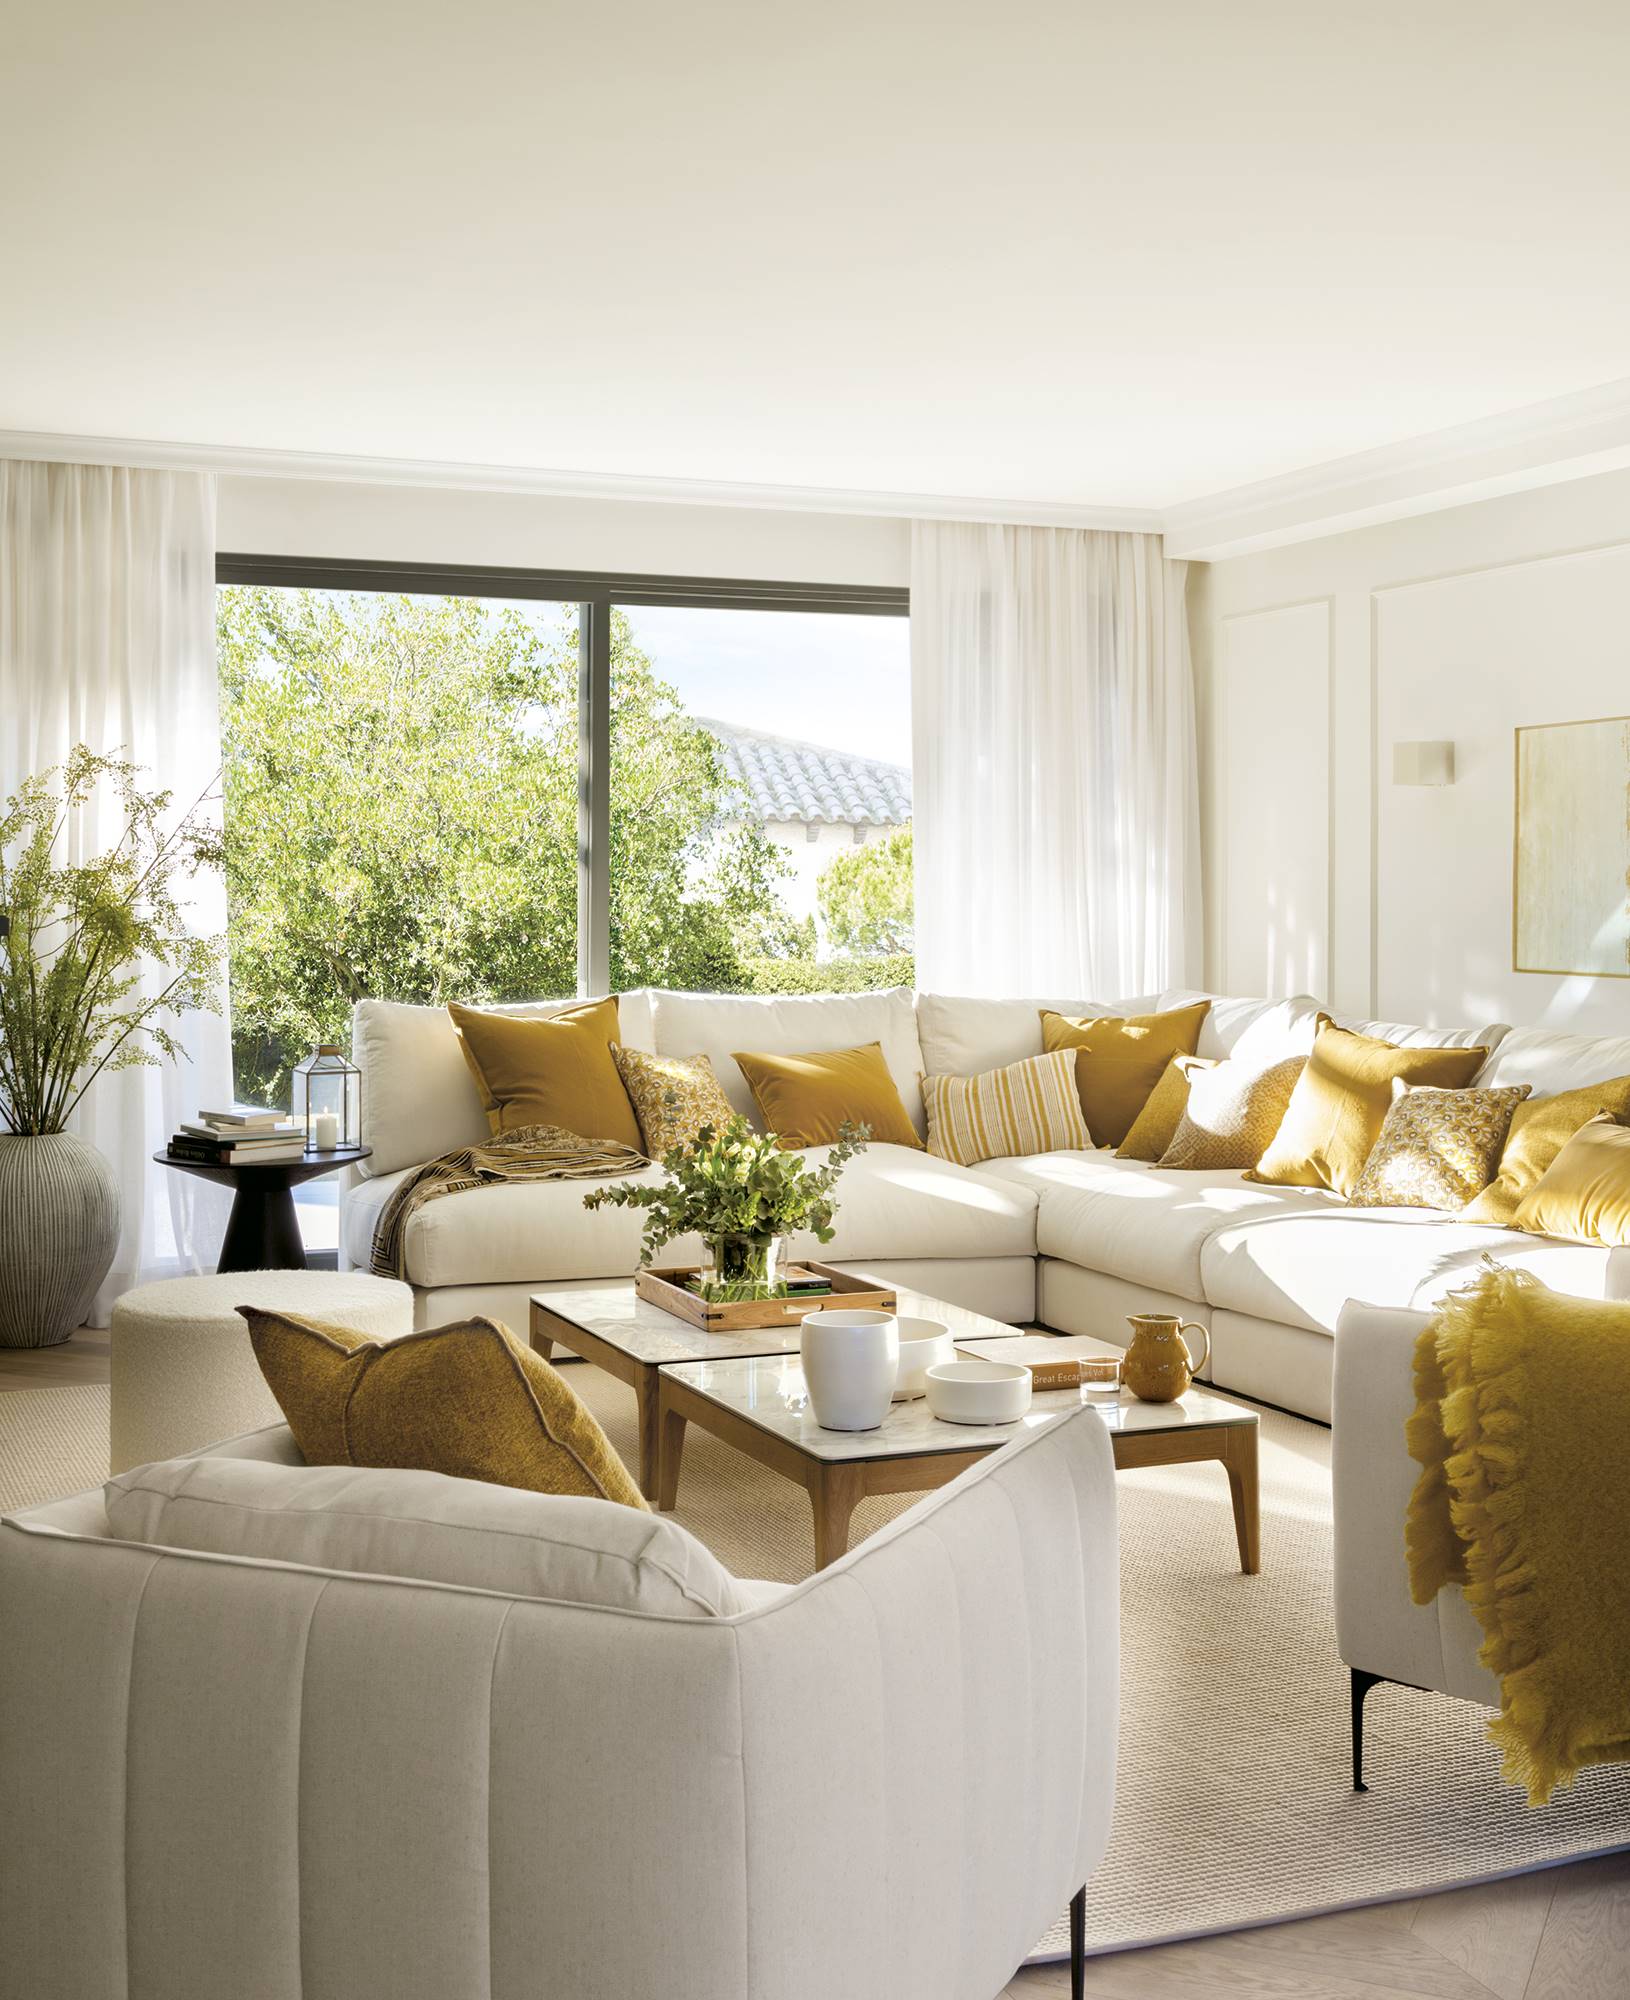 Zona de estar con sofá esquinero blanco, paredes blancas con molduras y cortinas de lino.